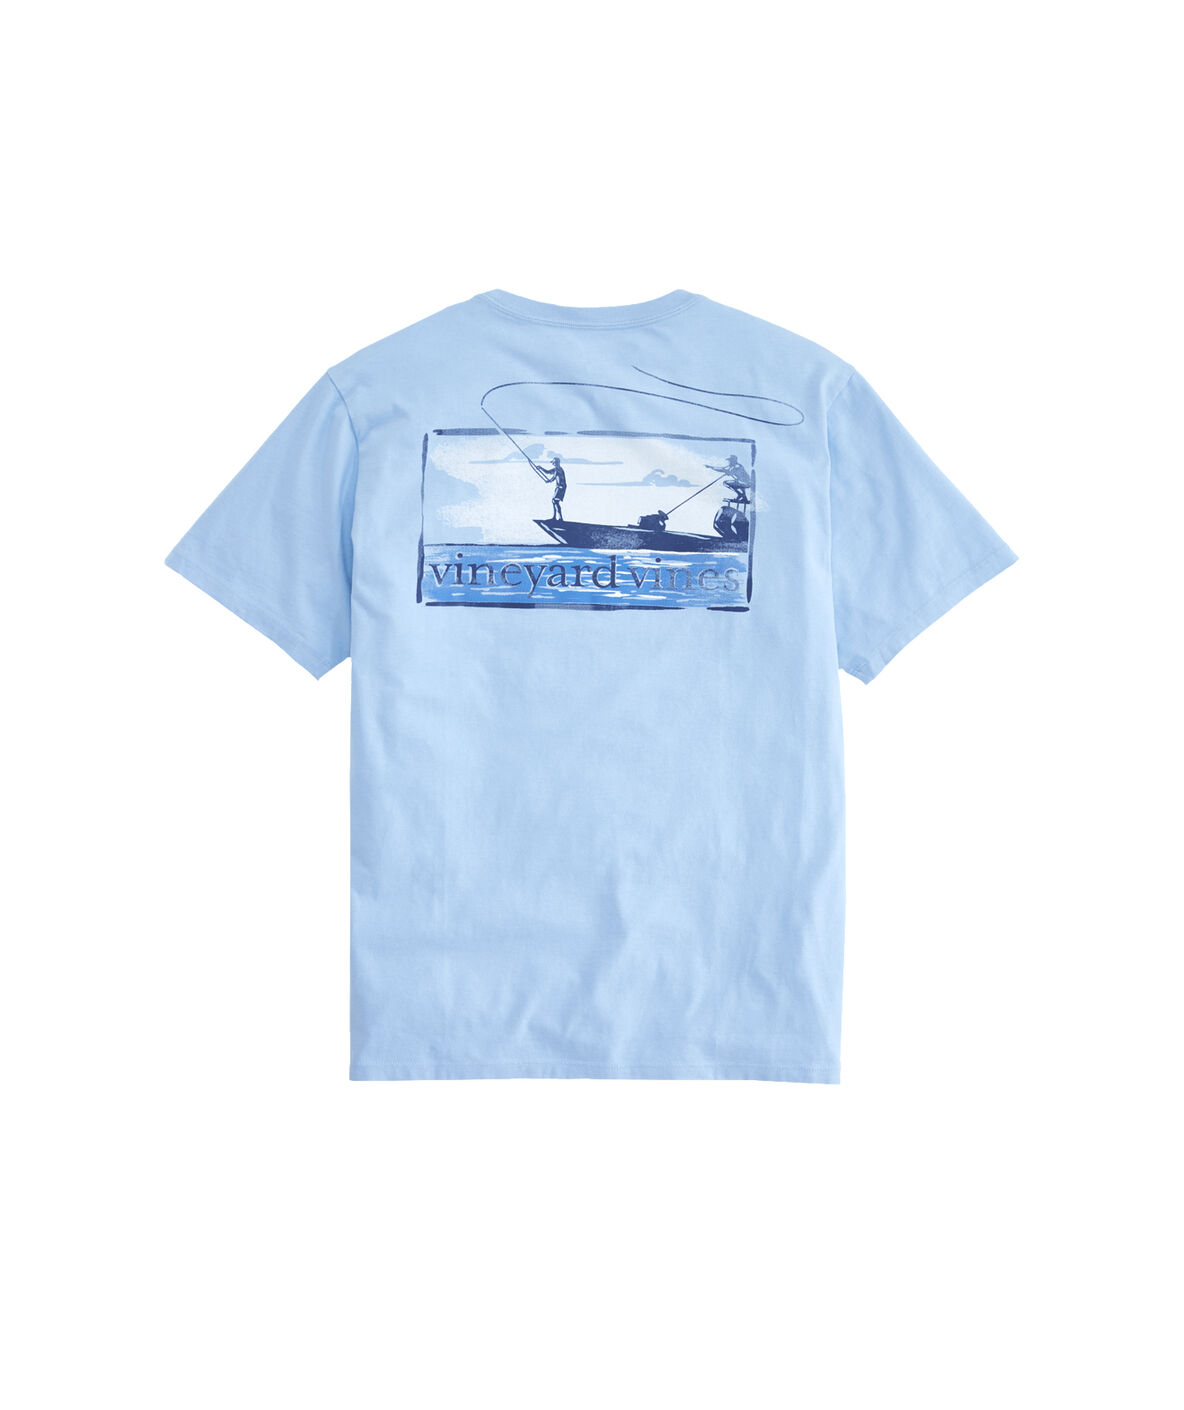 Shop Flats Boat Fishing T-Shirt at vineyard vines